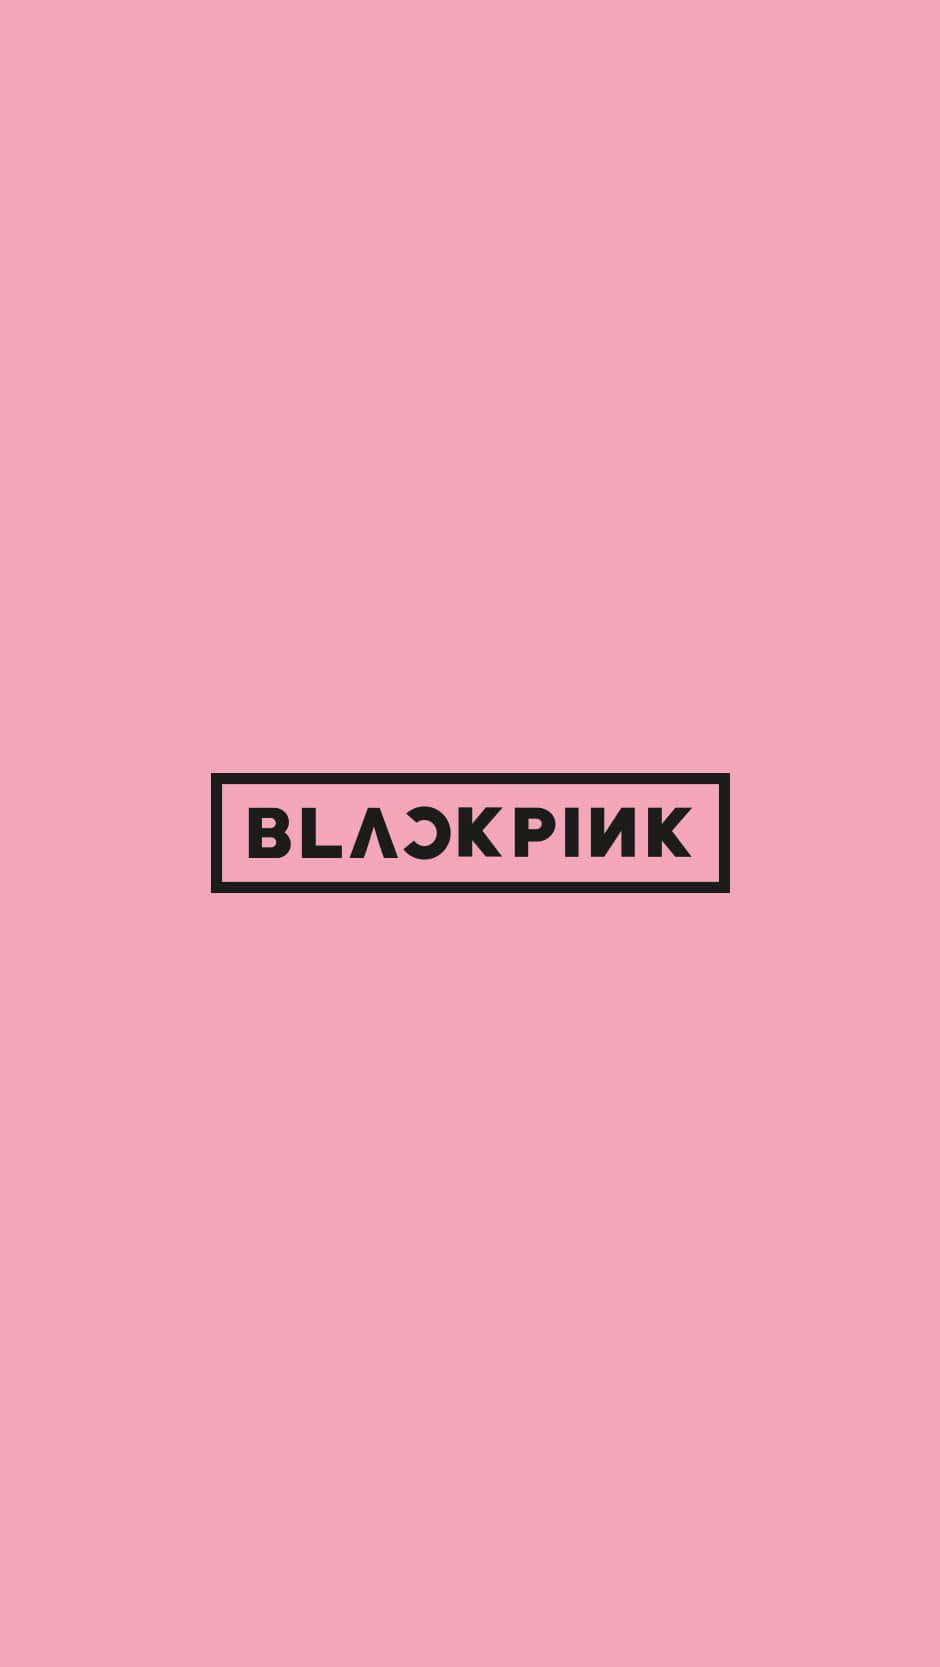 Blackpinklogo Auf Einem Rosa Hintergrund